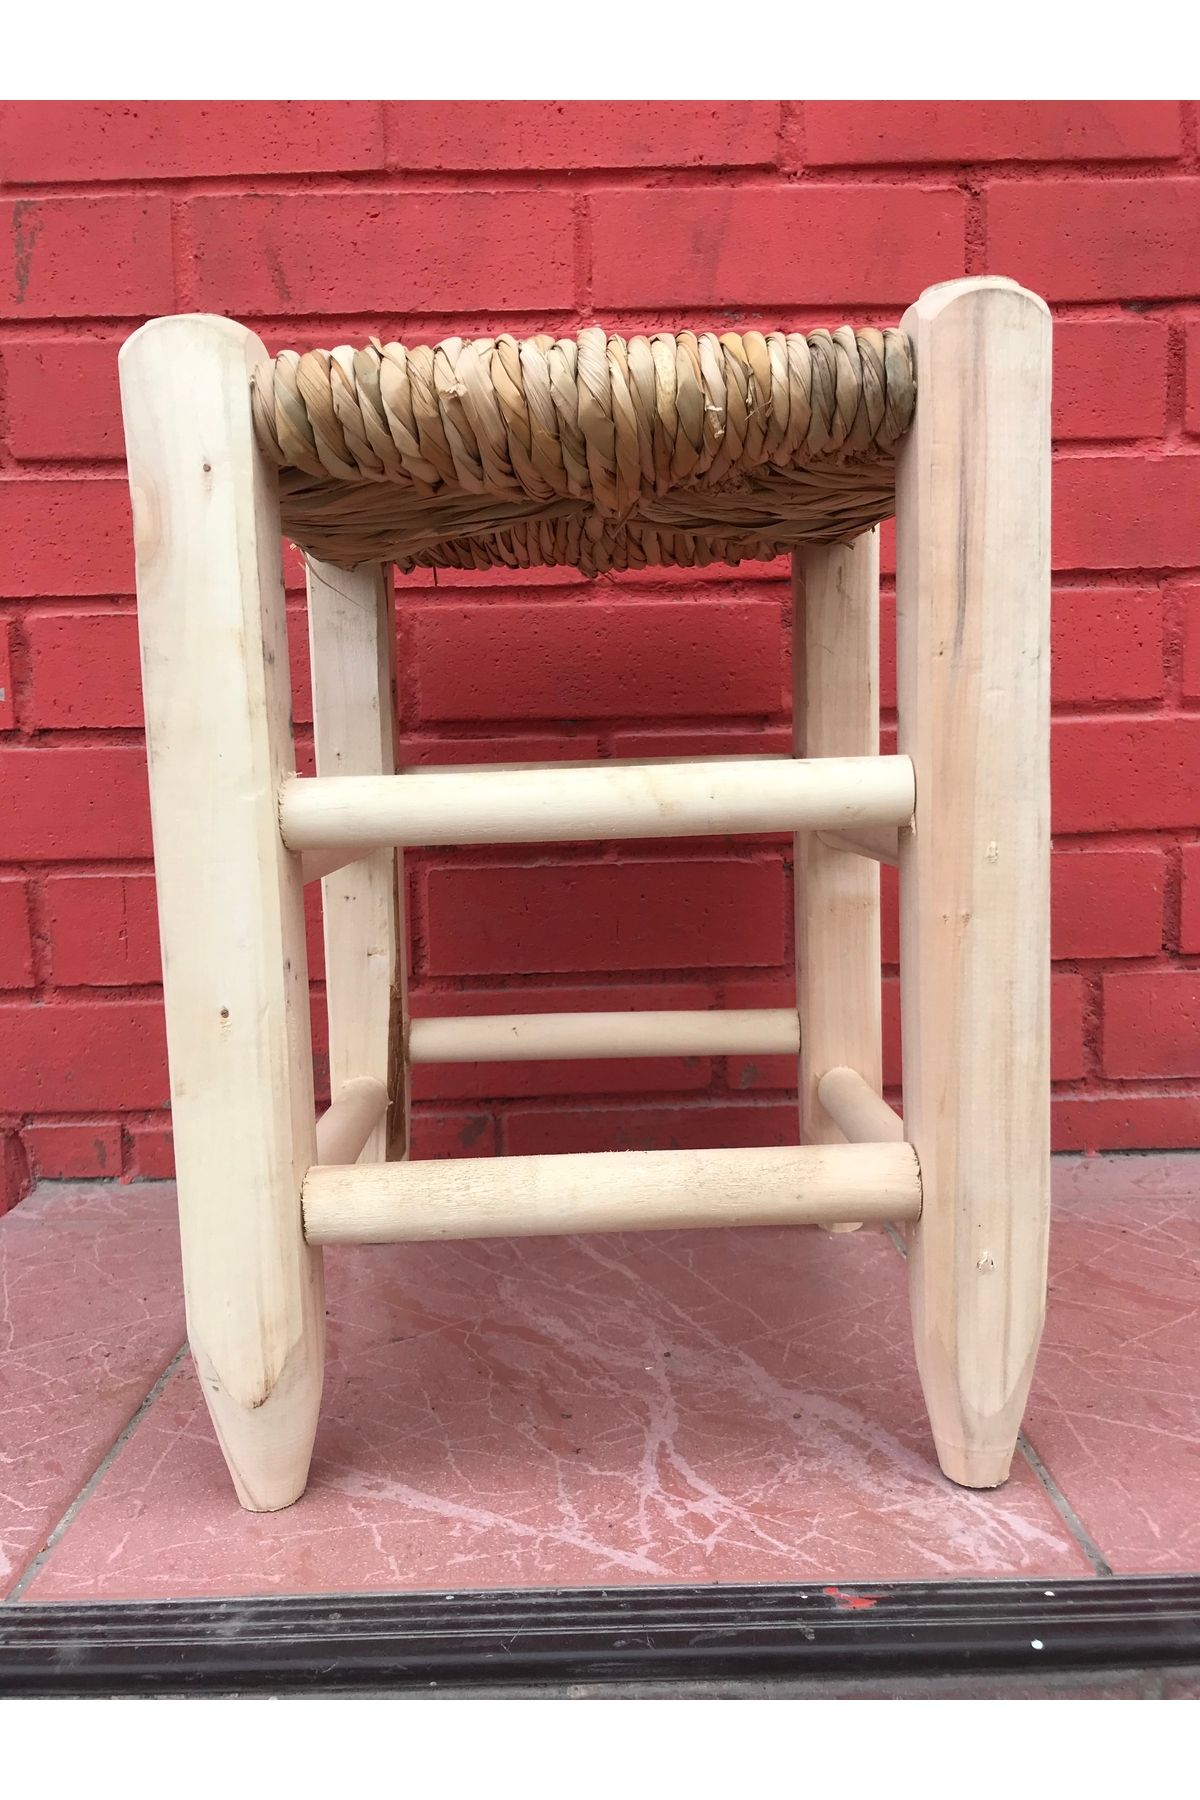 SevillaConcept 40 cm Gürgen Ağacı Hasır Tabure Hasır sandalye Örme Hasır Tabure